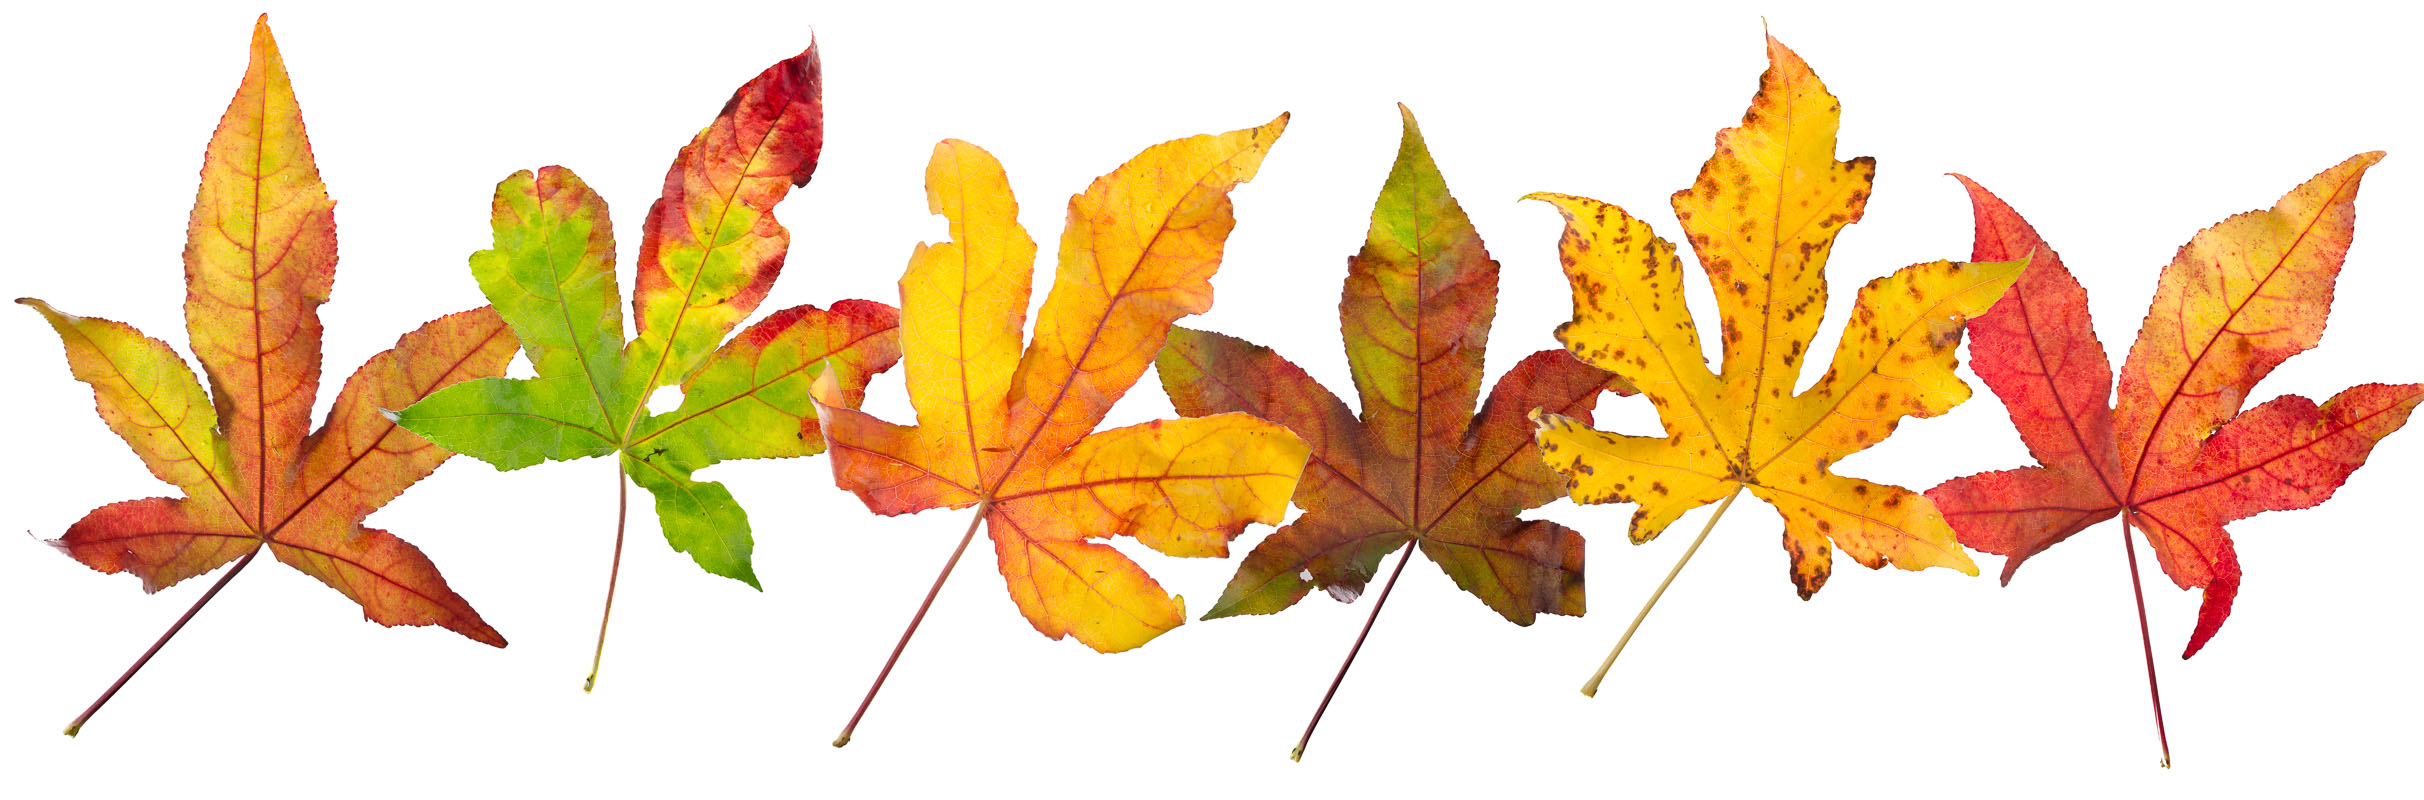 Middelen Banket Meter Prachtige herfstbladeren van onze amberboom - ActiV - Vrijetijdscomplex -  Tongeren